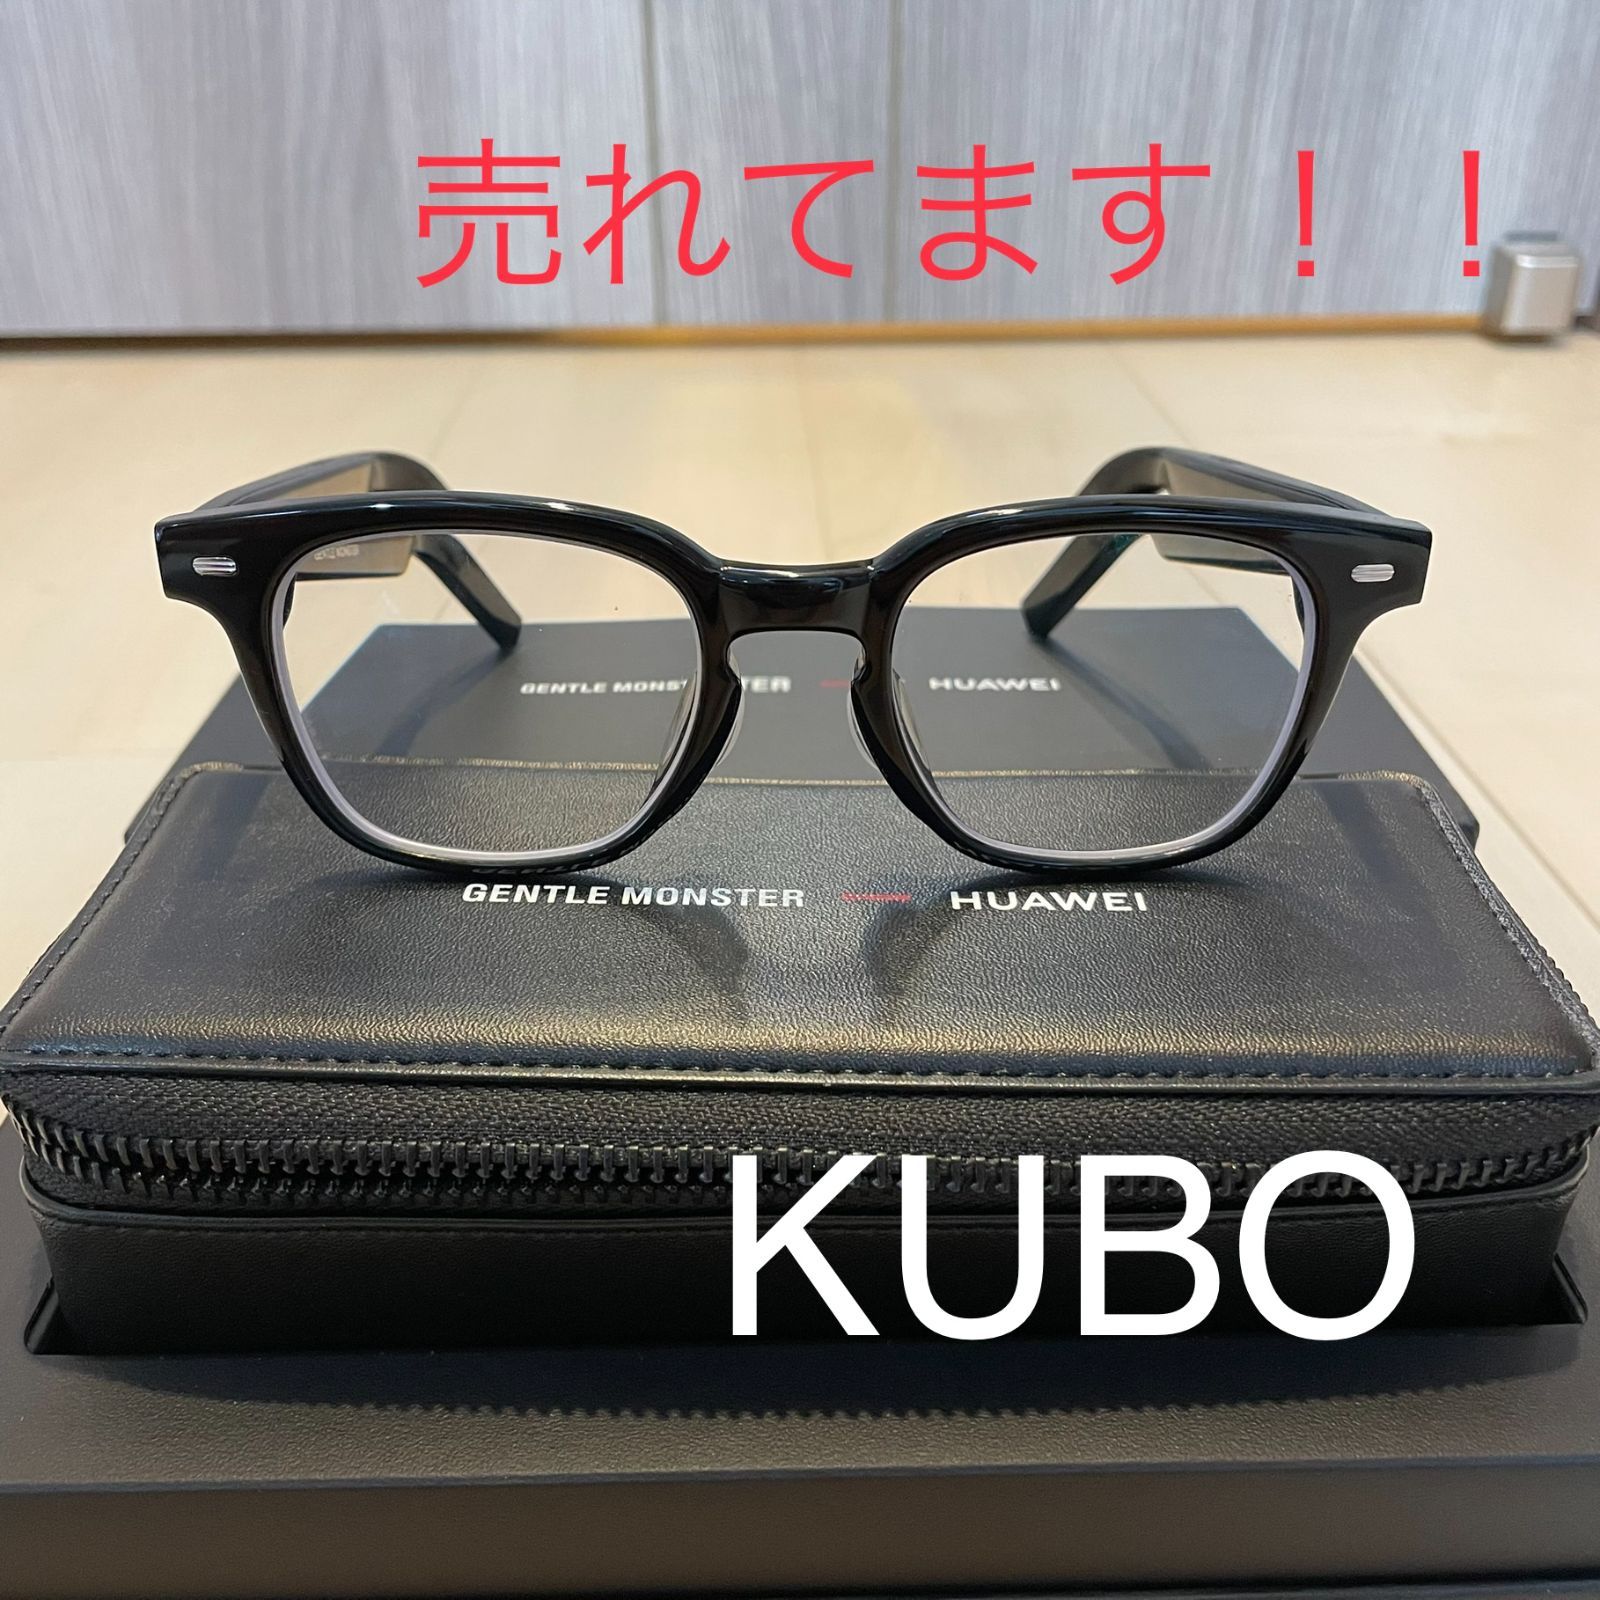 HUAWEI X GENTLE MONSTER Eyewear KUBO - メルカリ